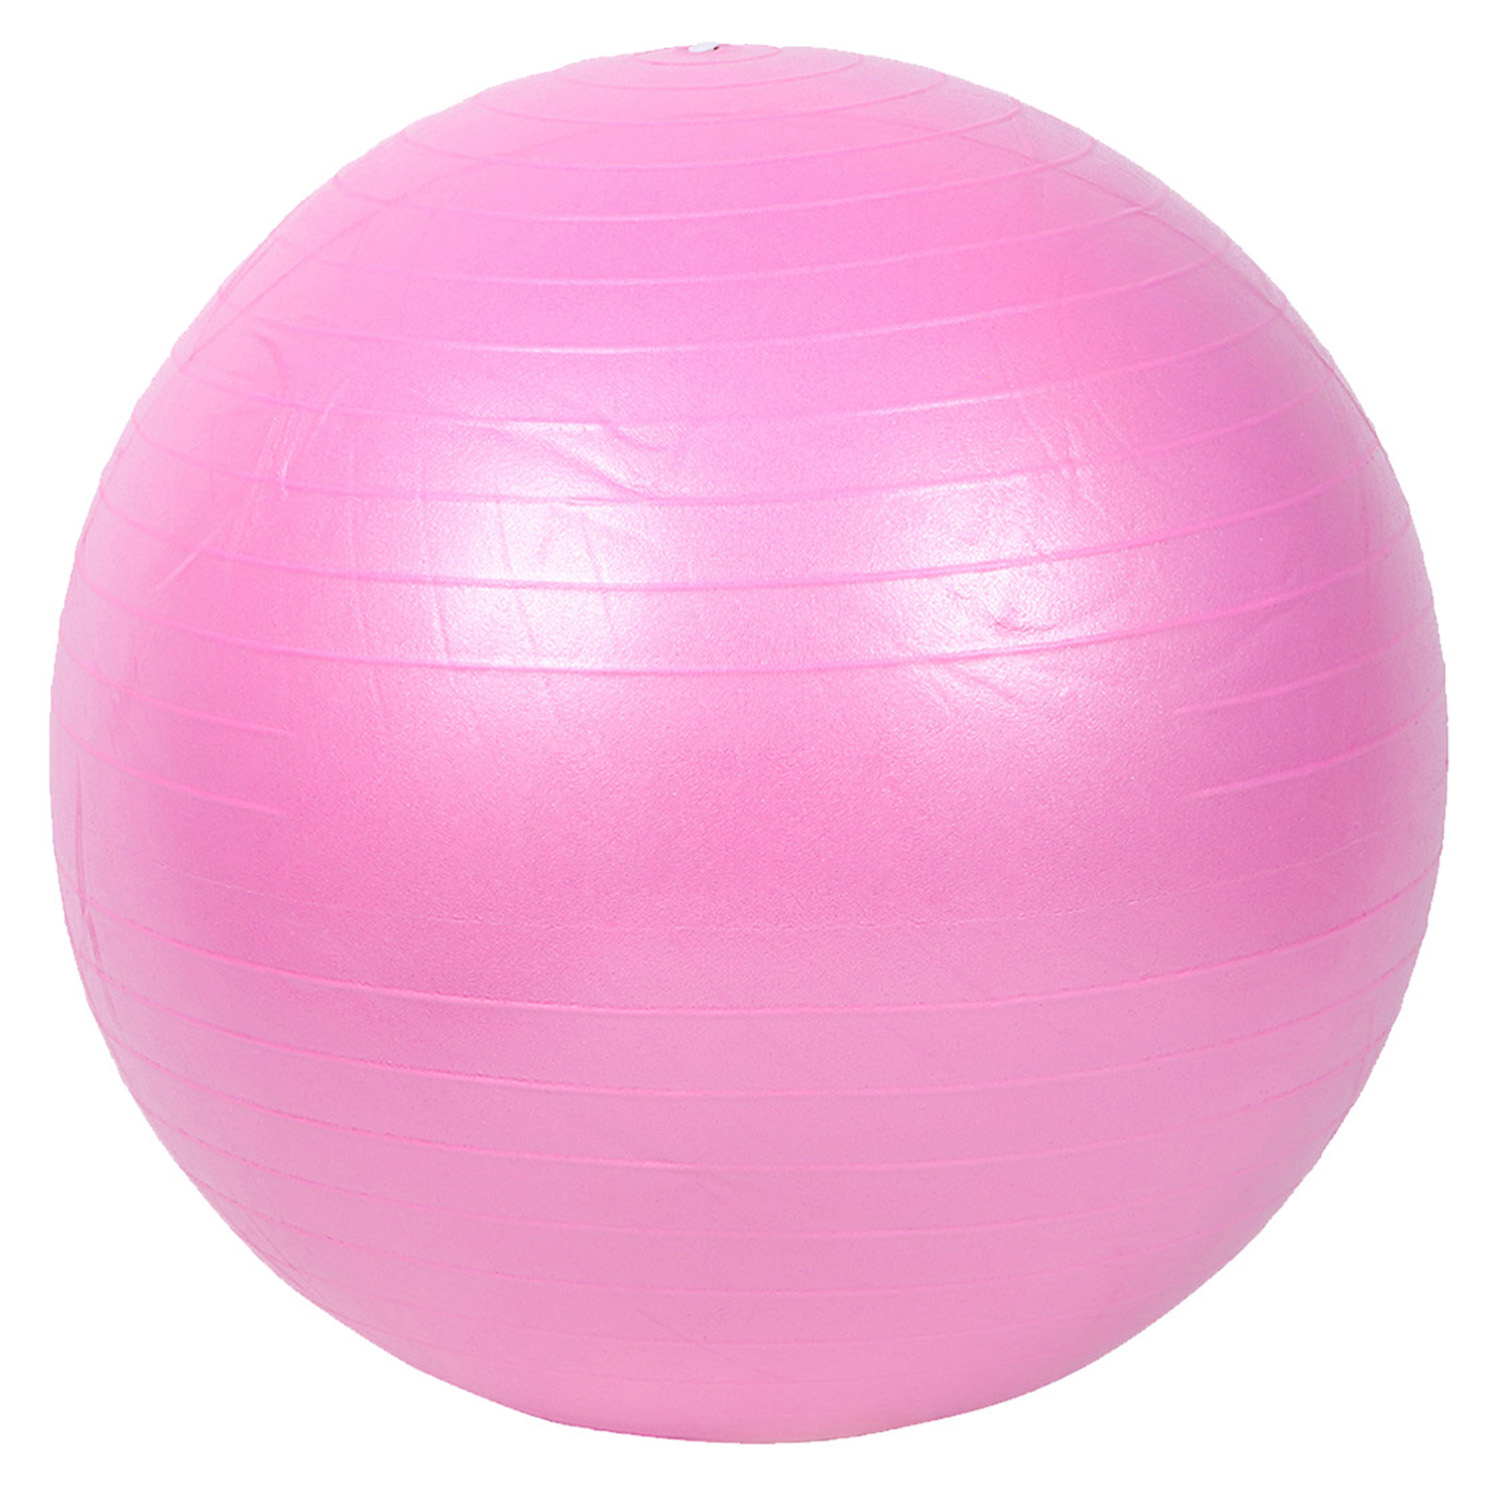 фото Мяч гимнастический, фитбол, для фитнеса/спорта, диаметр 55 см, пвх, розовый, jb0210286 cr